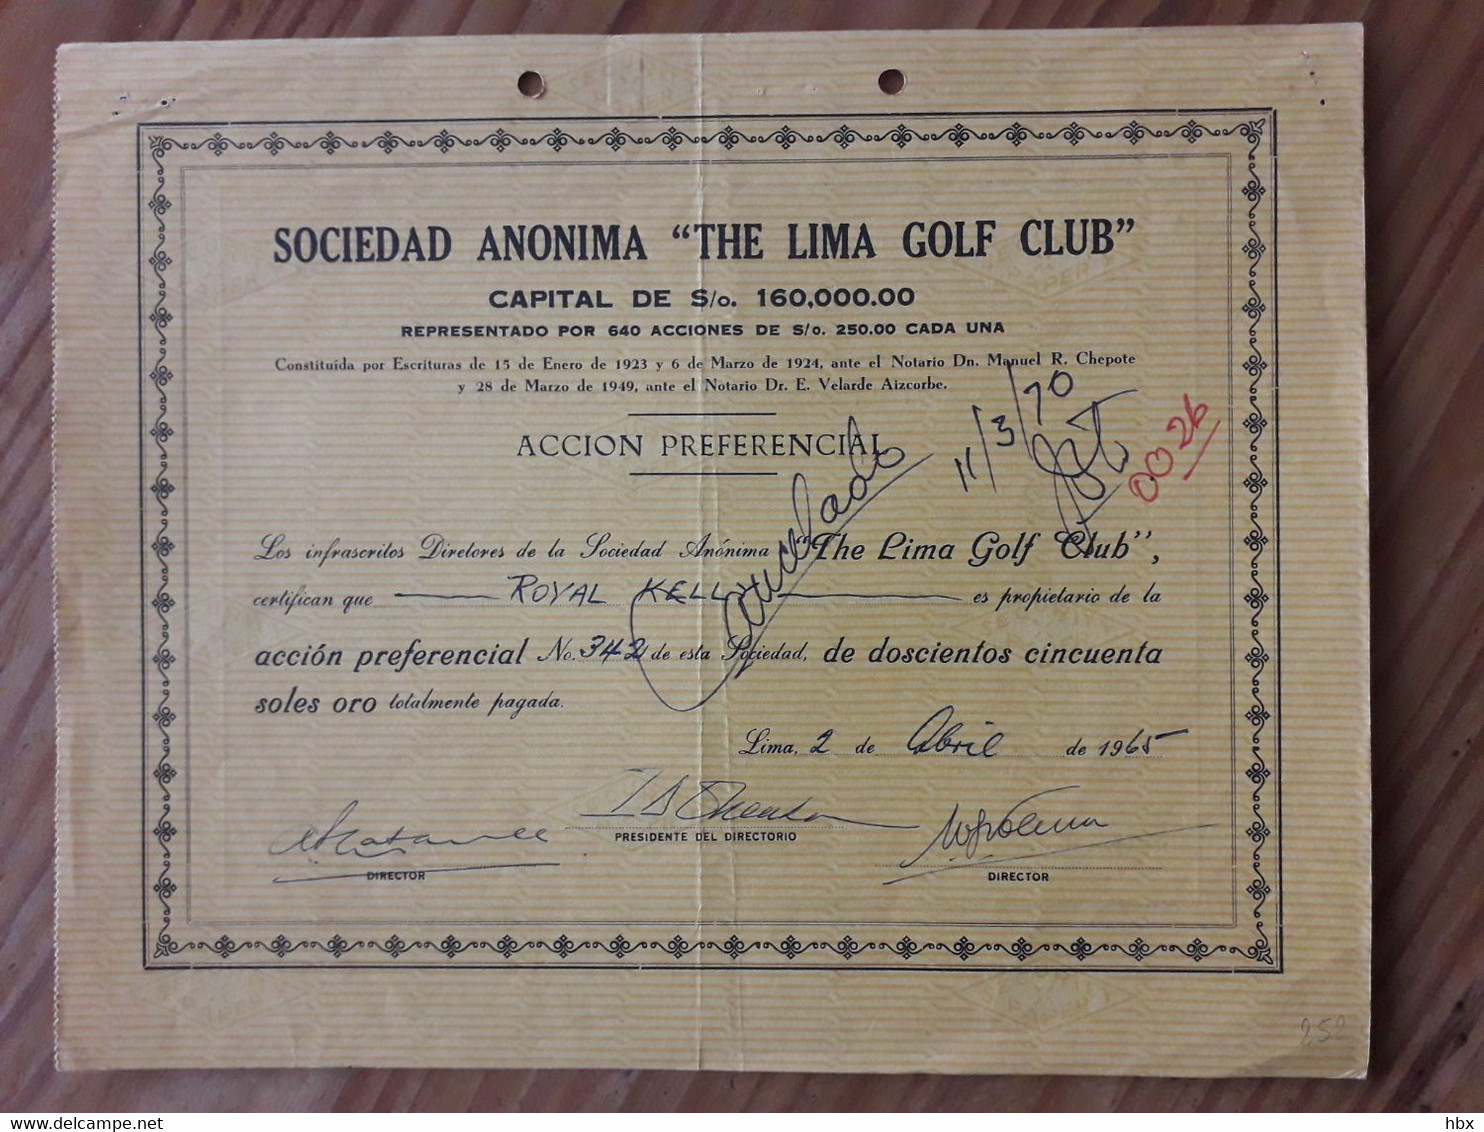 The Lima Golf Club - 1965 - Sport